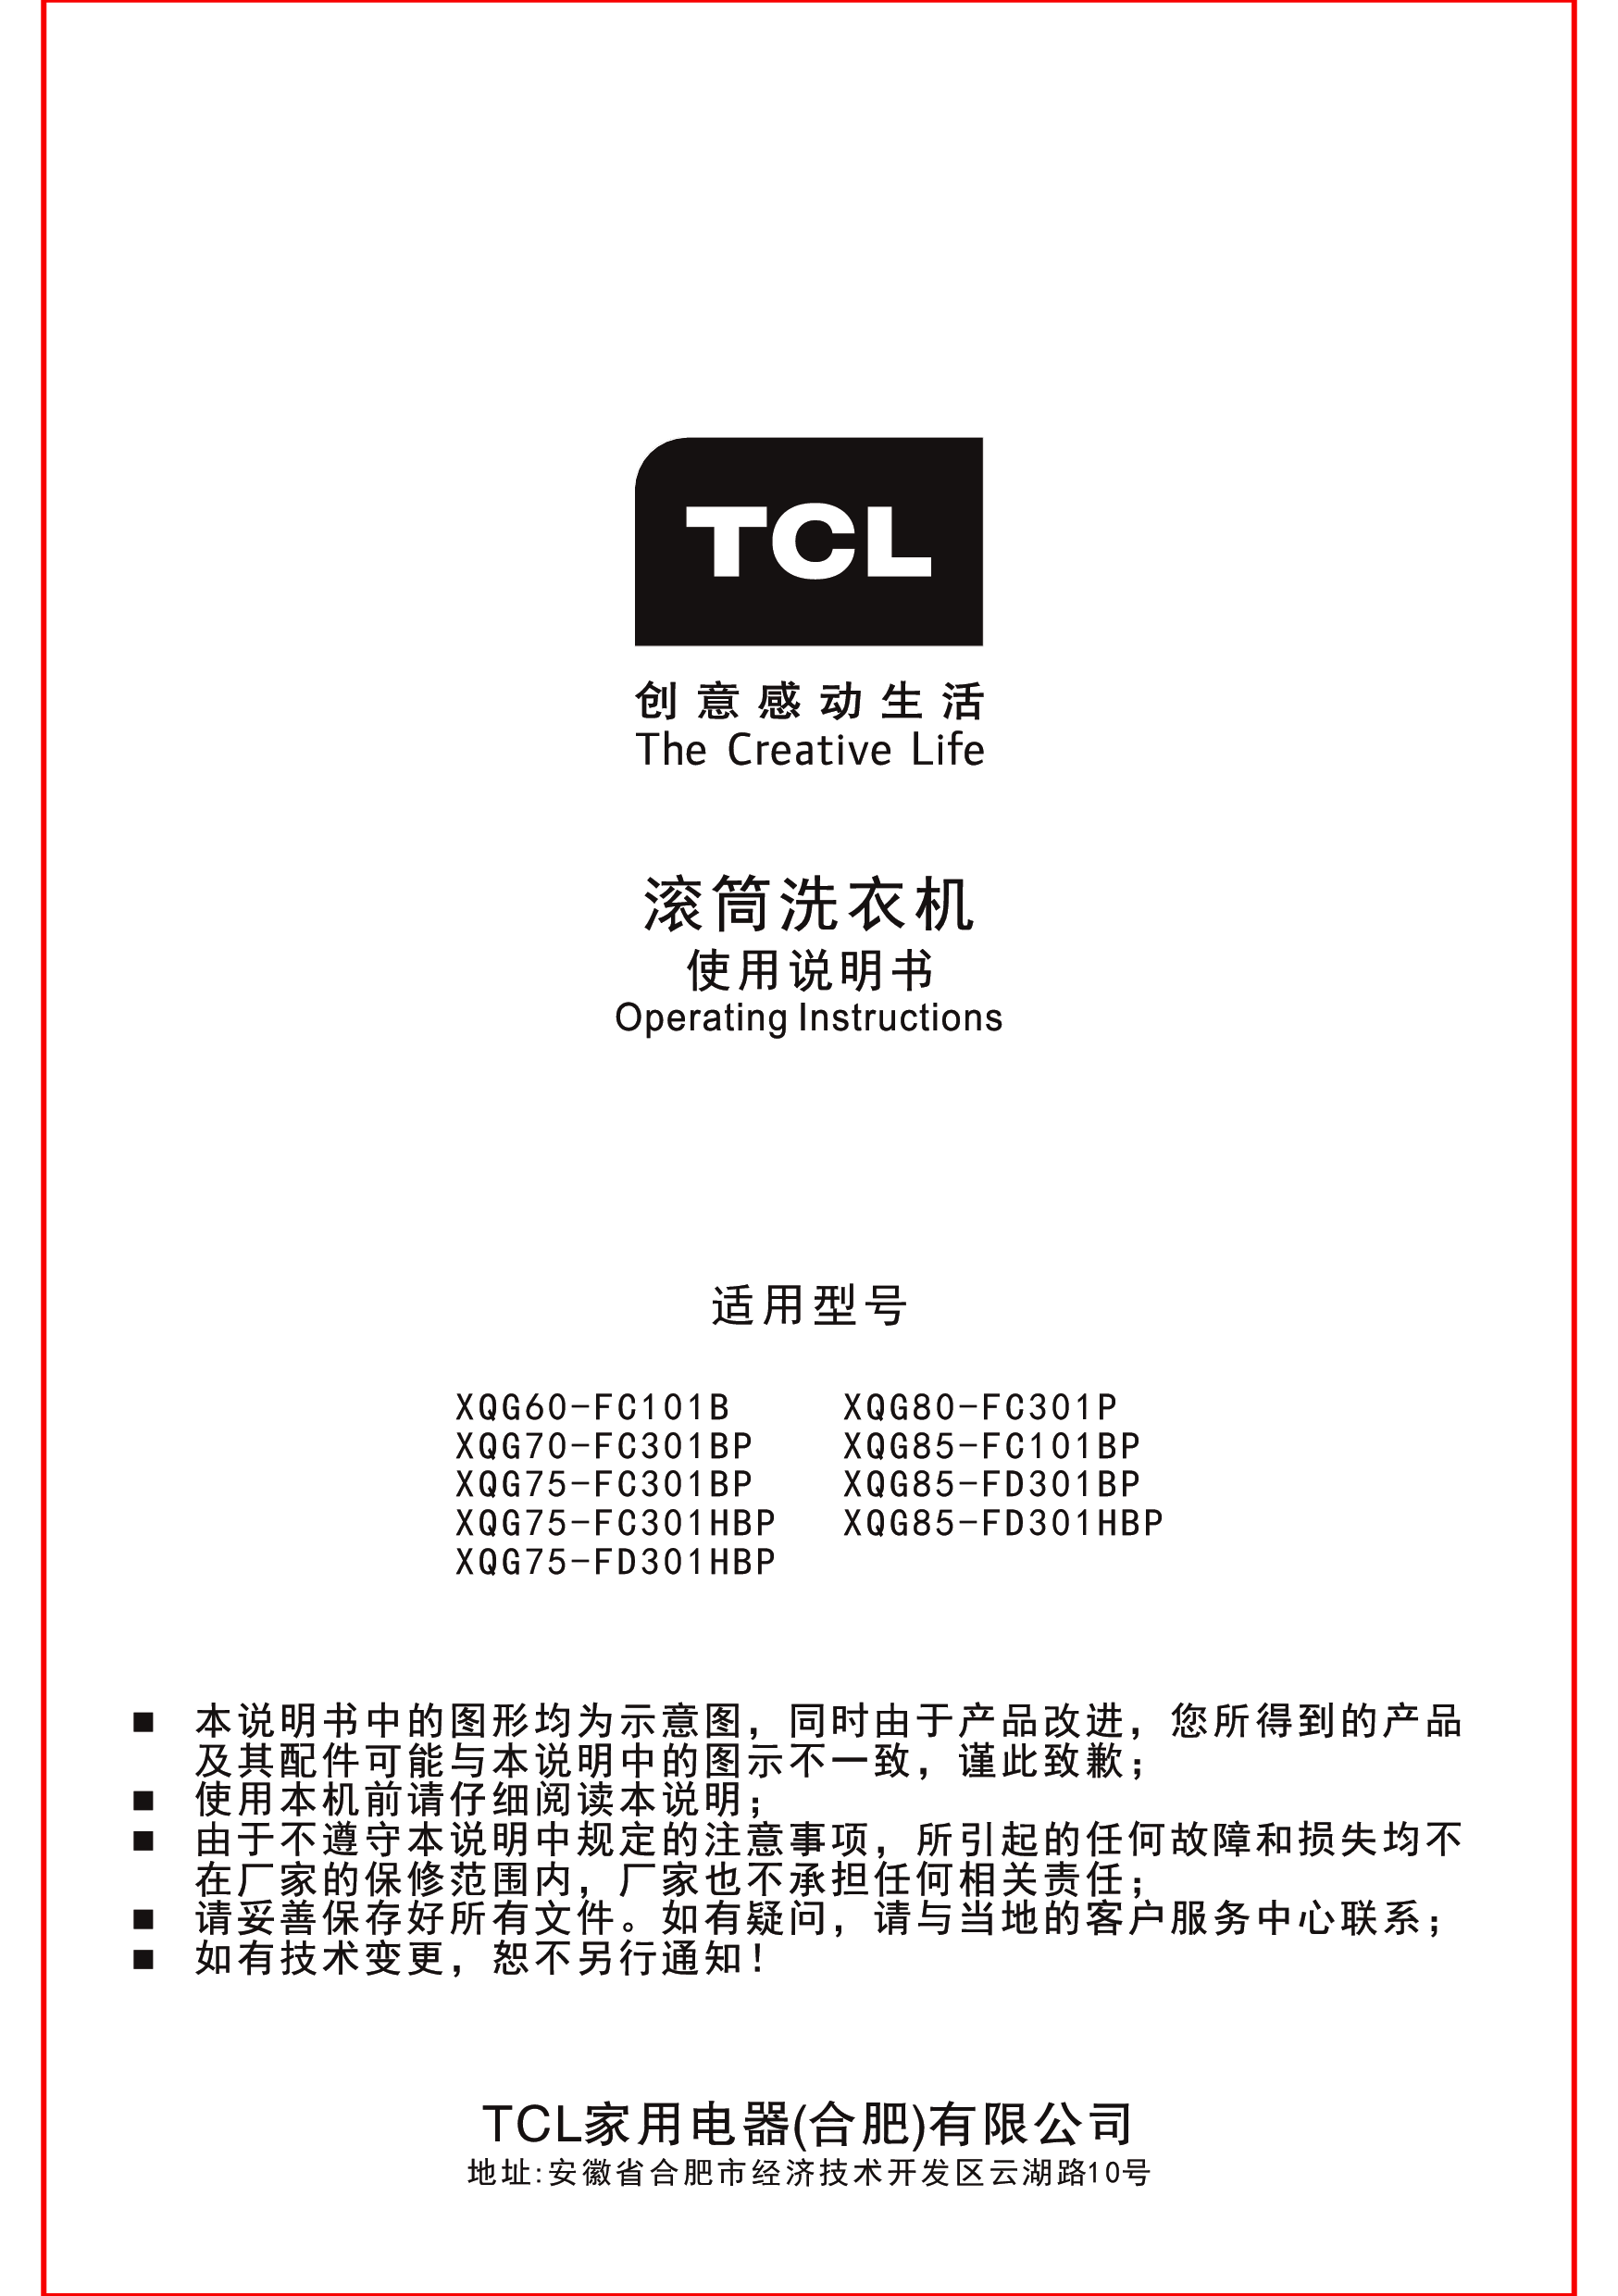 TCL XQG60-FC101B, XQG75-FD301HBP 使用说明书 封面